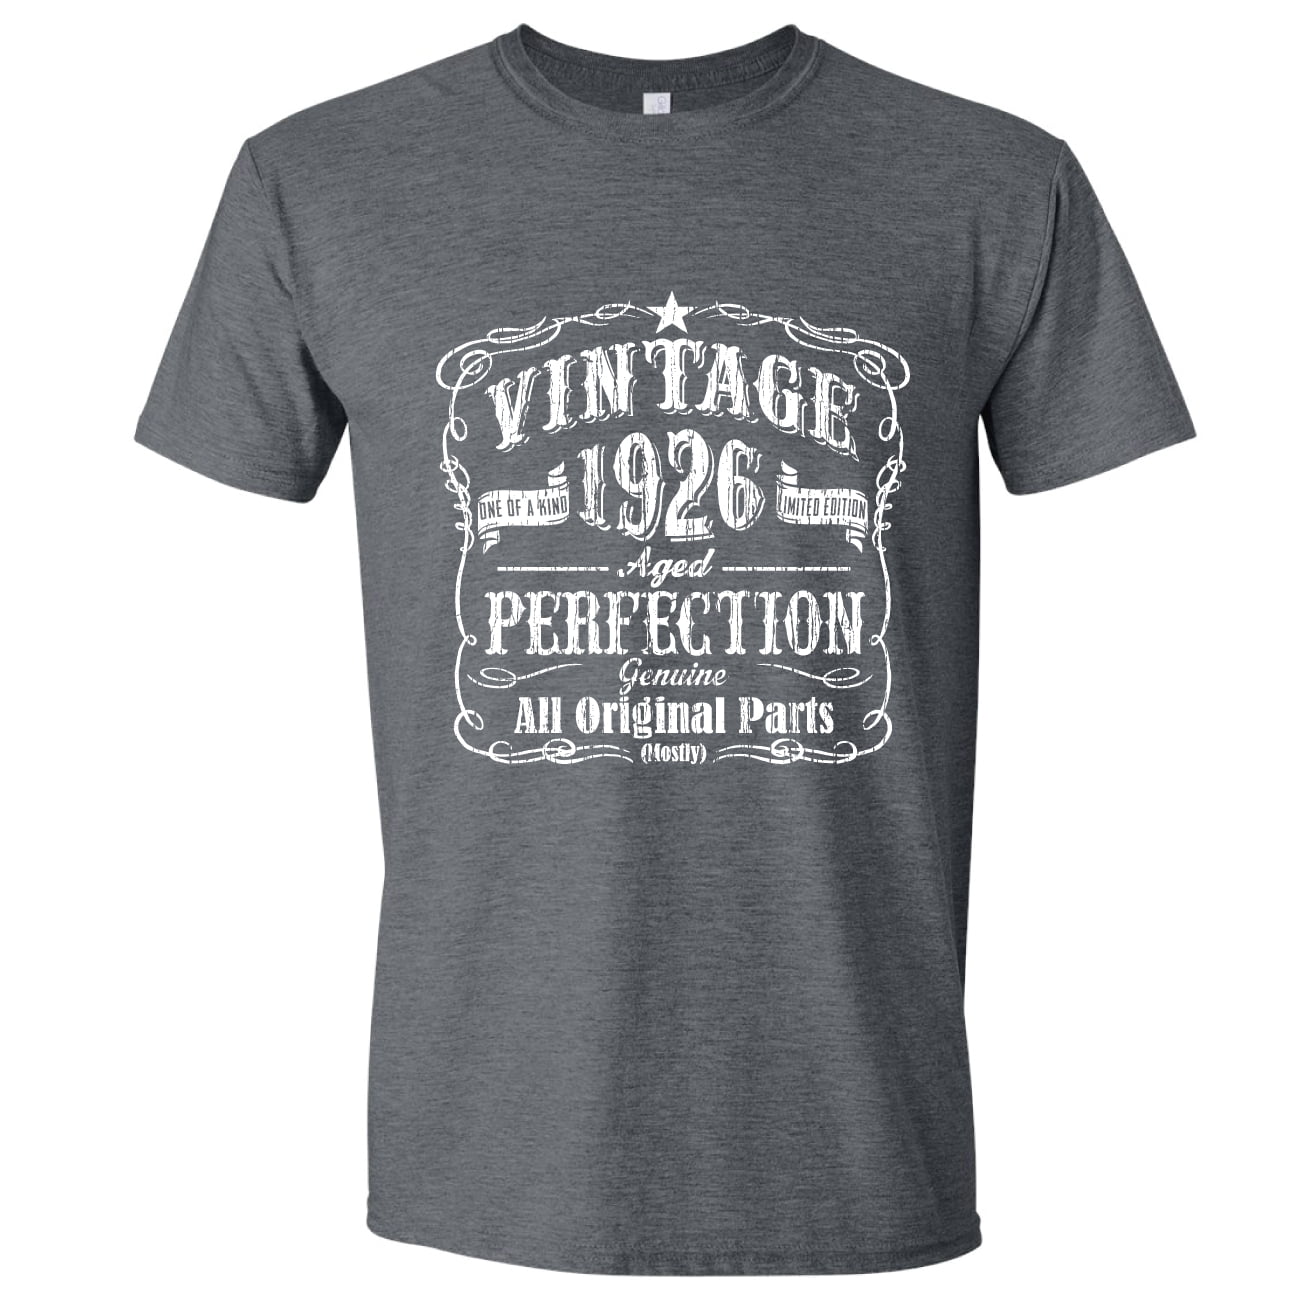 Whiskey Theme Vintage T-Shirt 1989 Birthday Gift